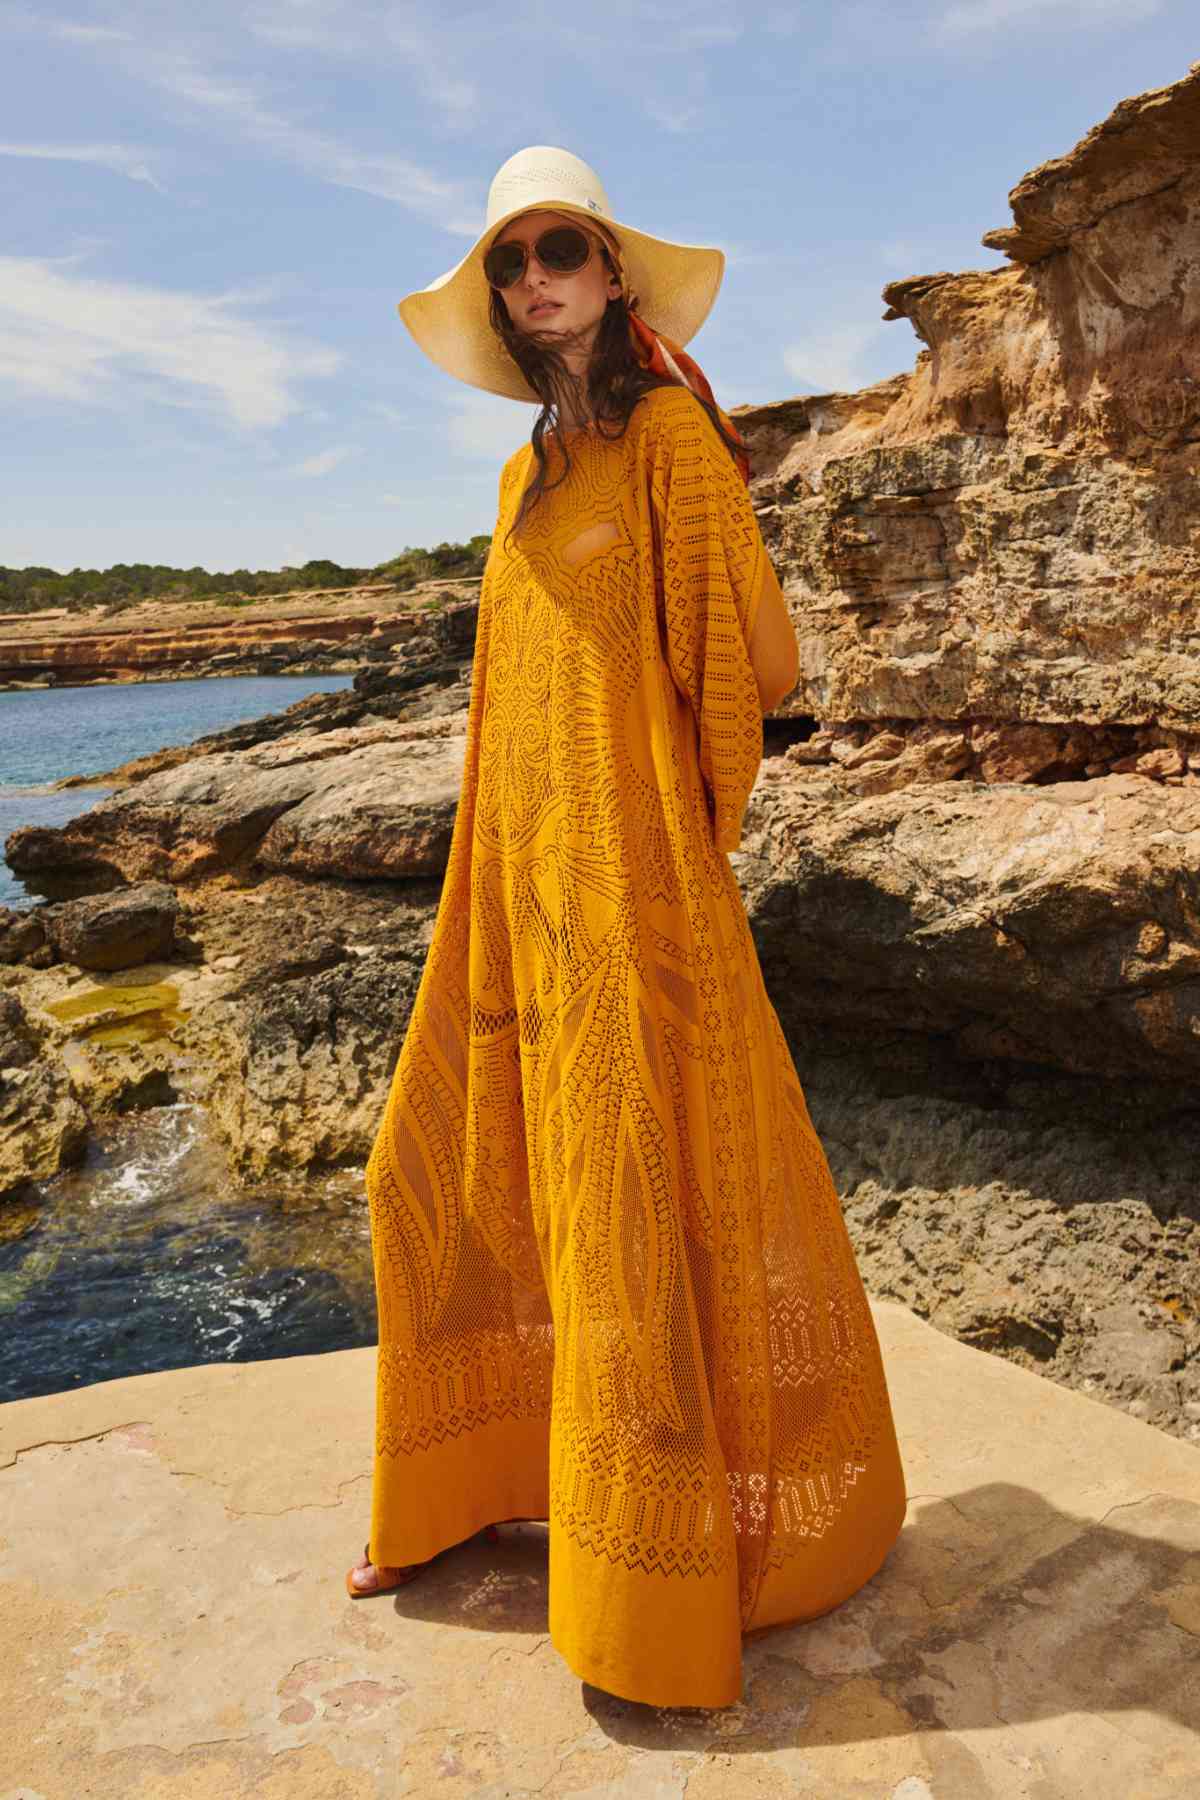 Alberta Ferretti Presents Its New Resort 23 Collection: In The Glaring Sun